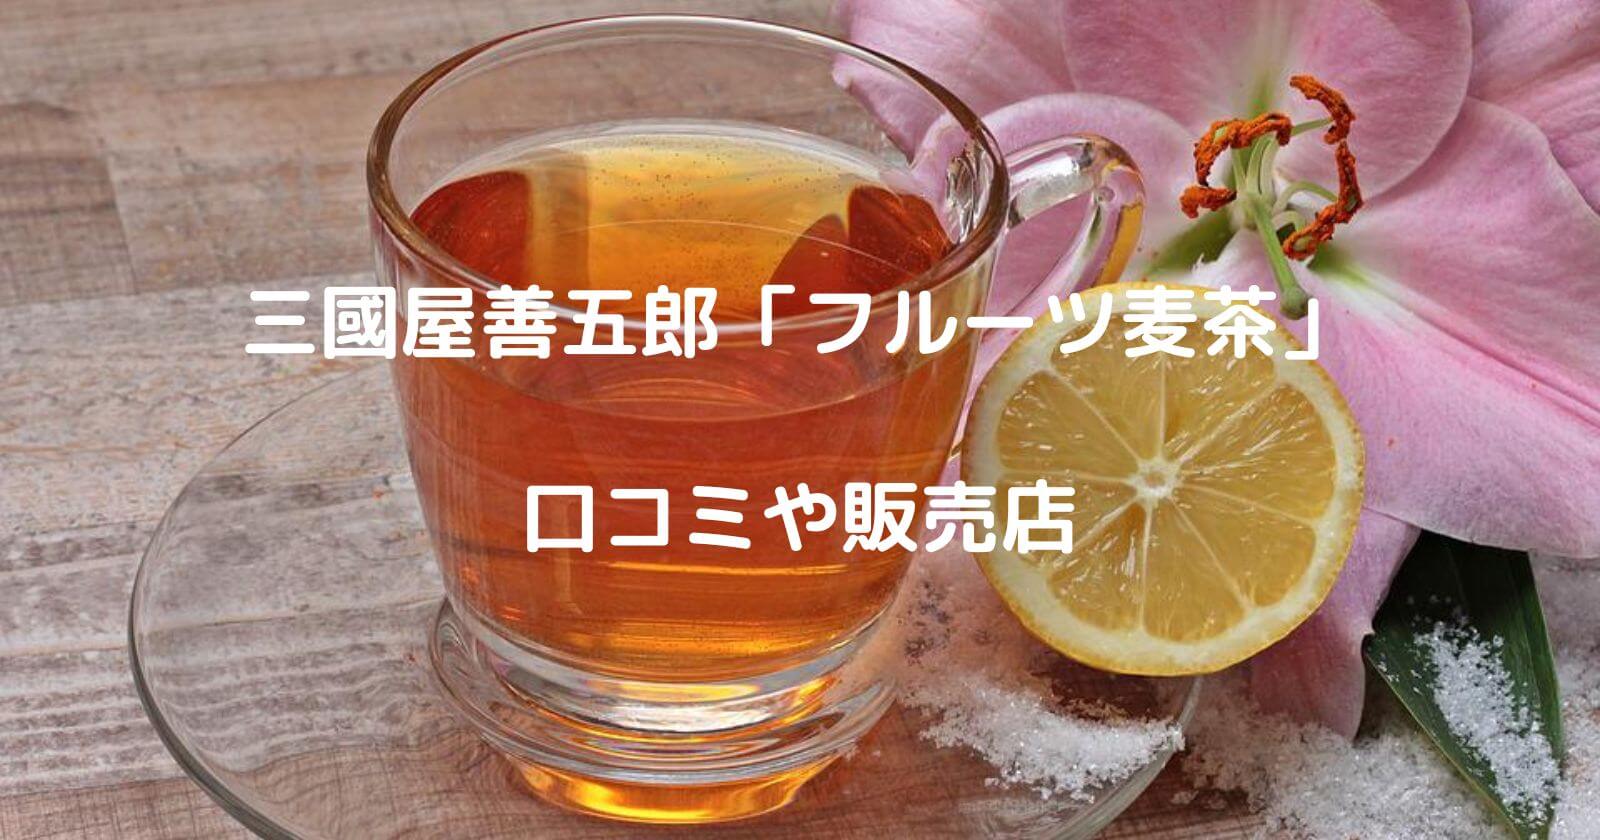 三國屋善五郎「フルーツ麦茶」の口コミや通販・販売店